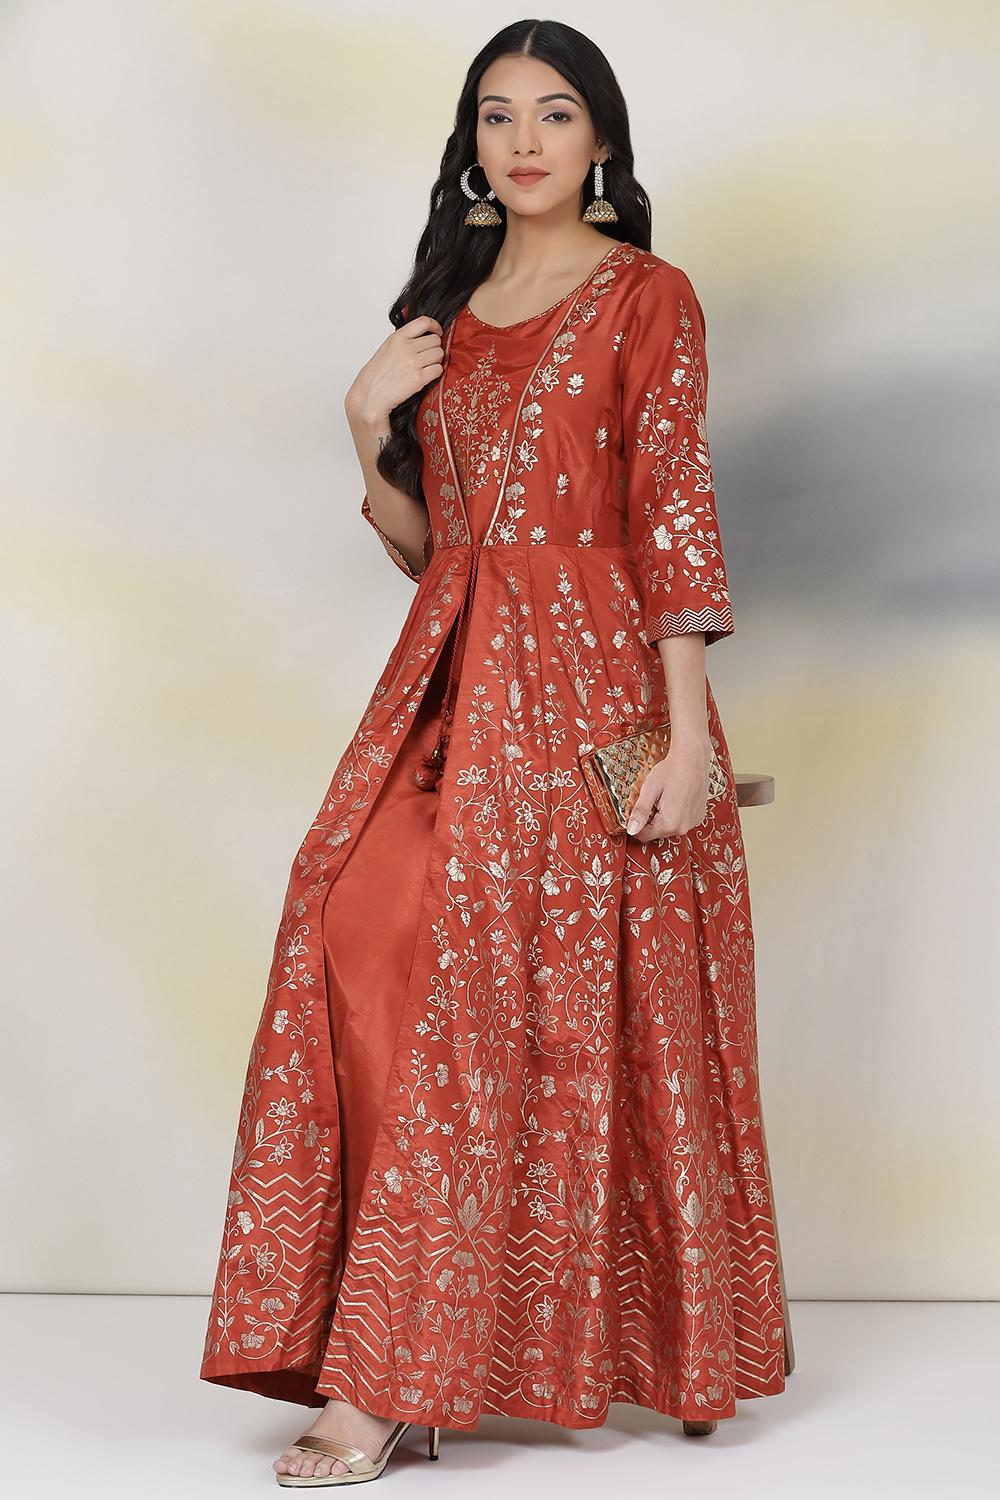 Buy Online Orange Flared Art Silk Fusion Wear Dress for Women ...